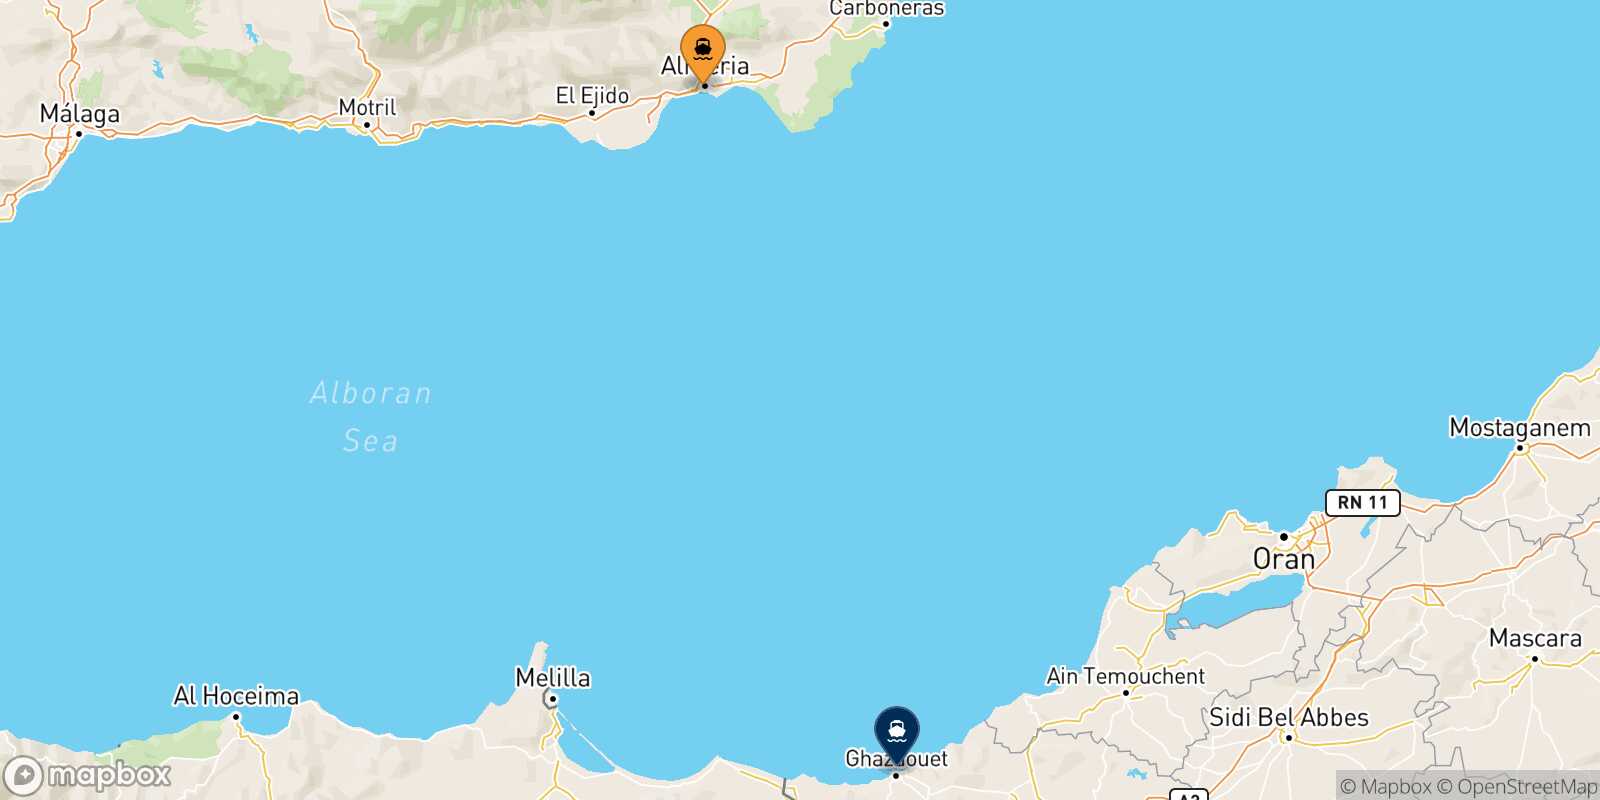 Mapa de la ruta Almería Ghazaouet